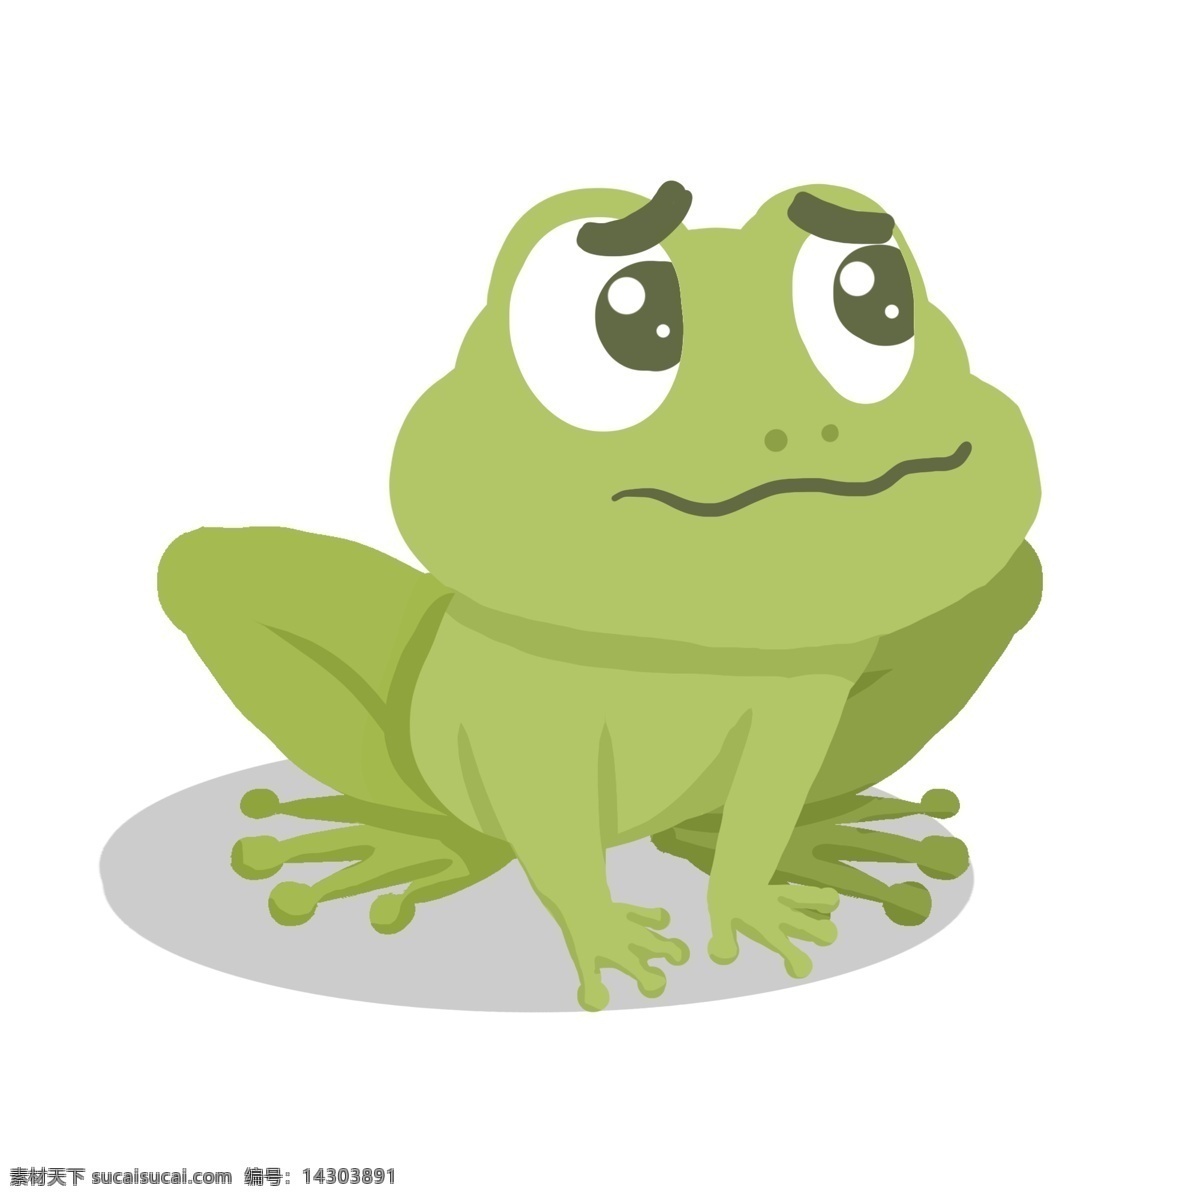 委屈的青蛙 卡通 可爱 手绘